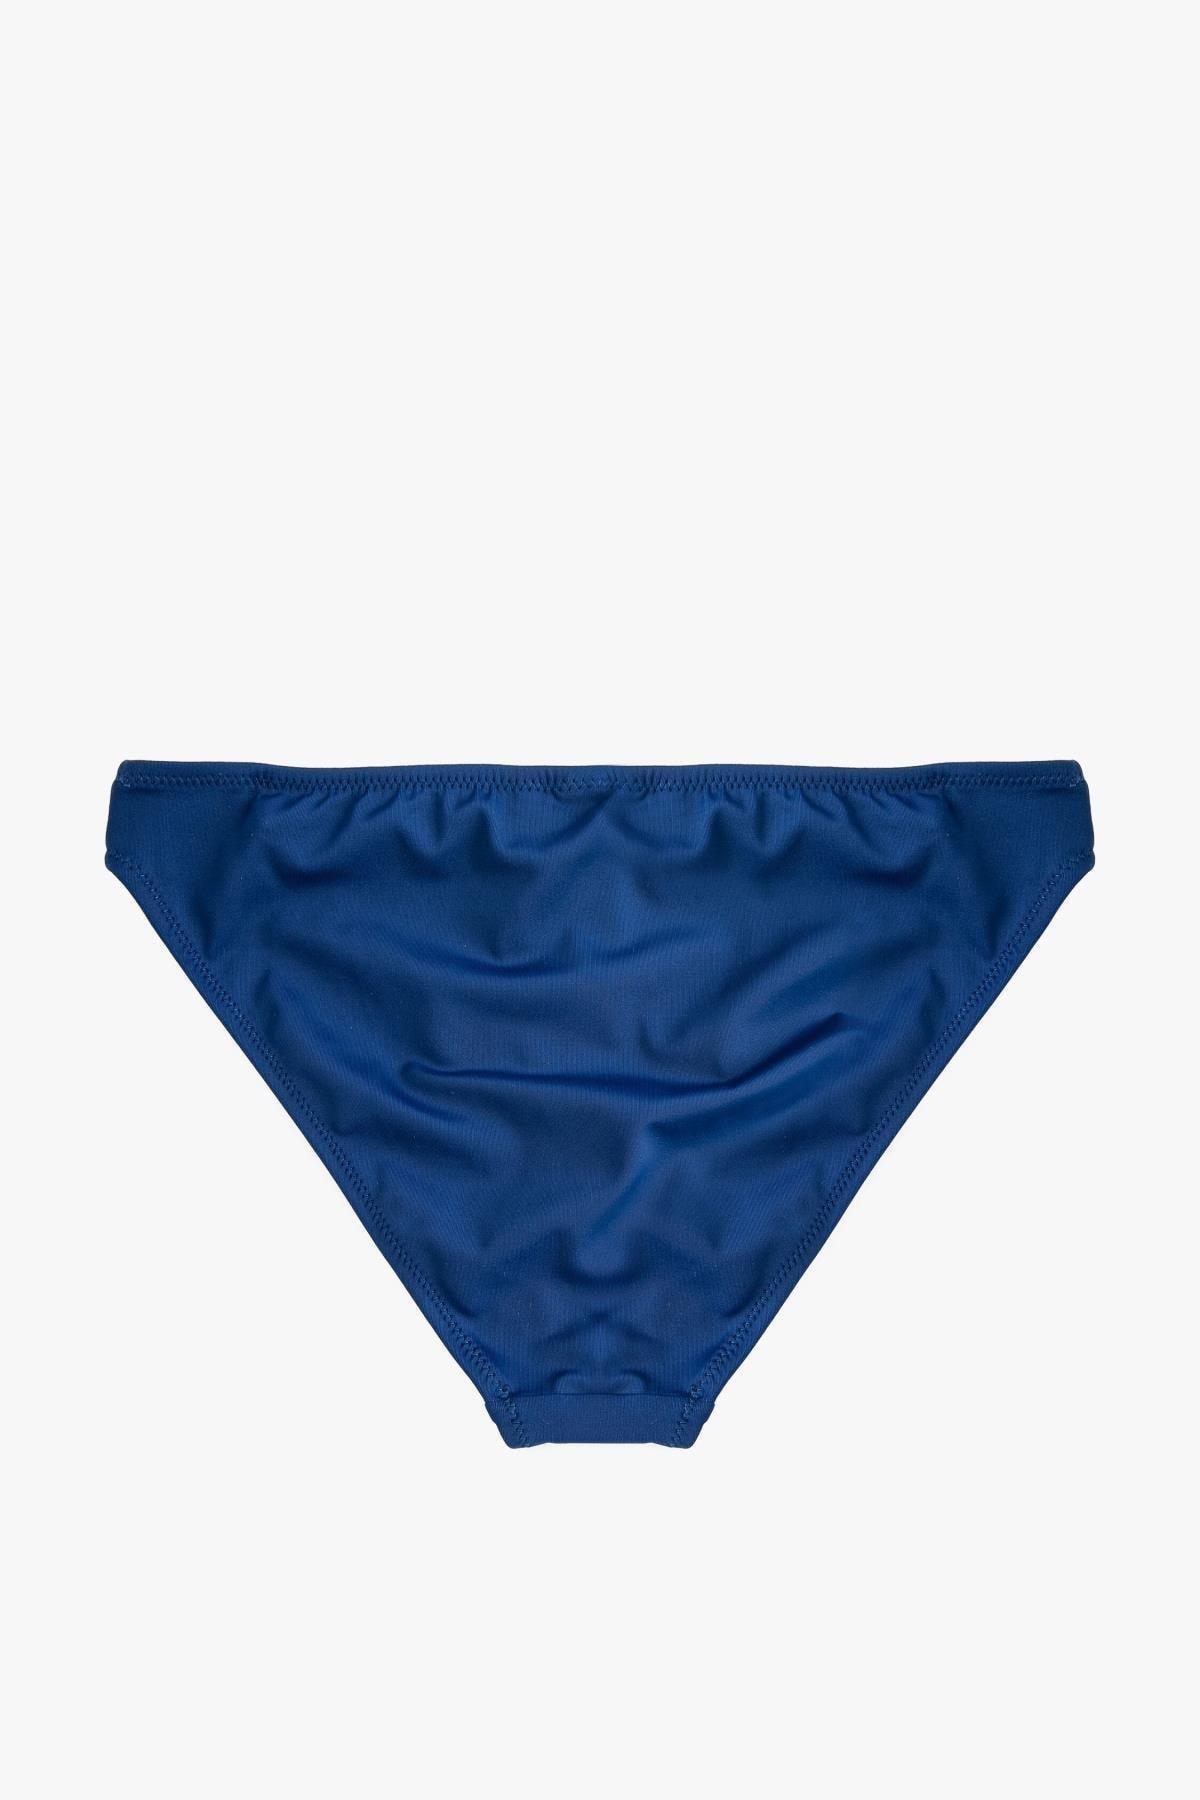 Koton - Navy Bikini Bottom